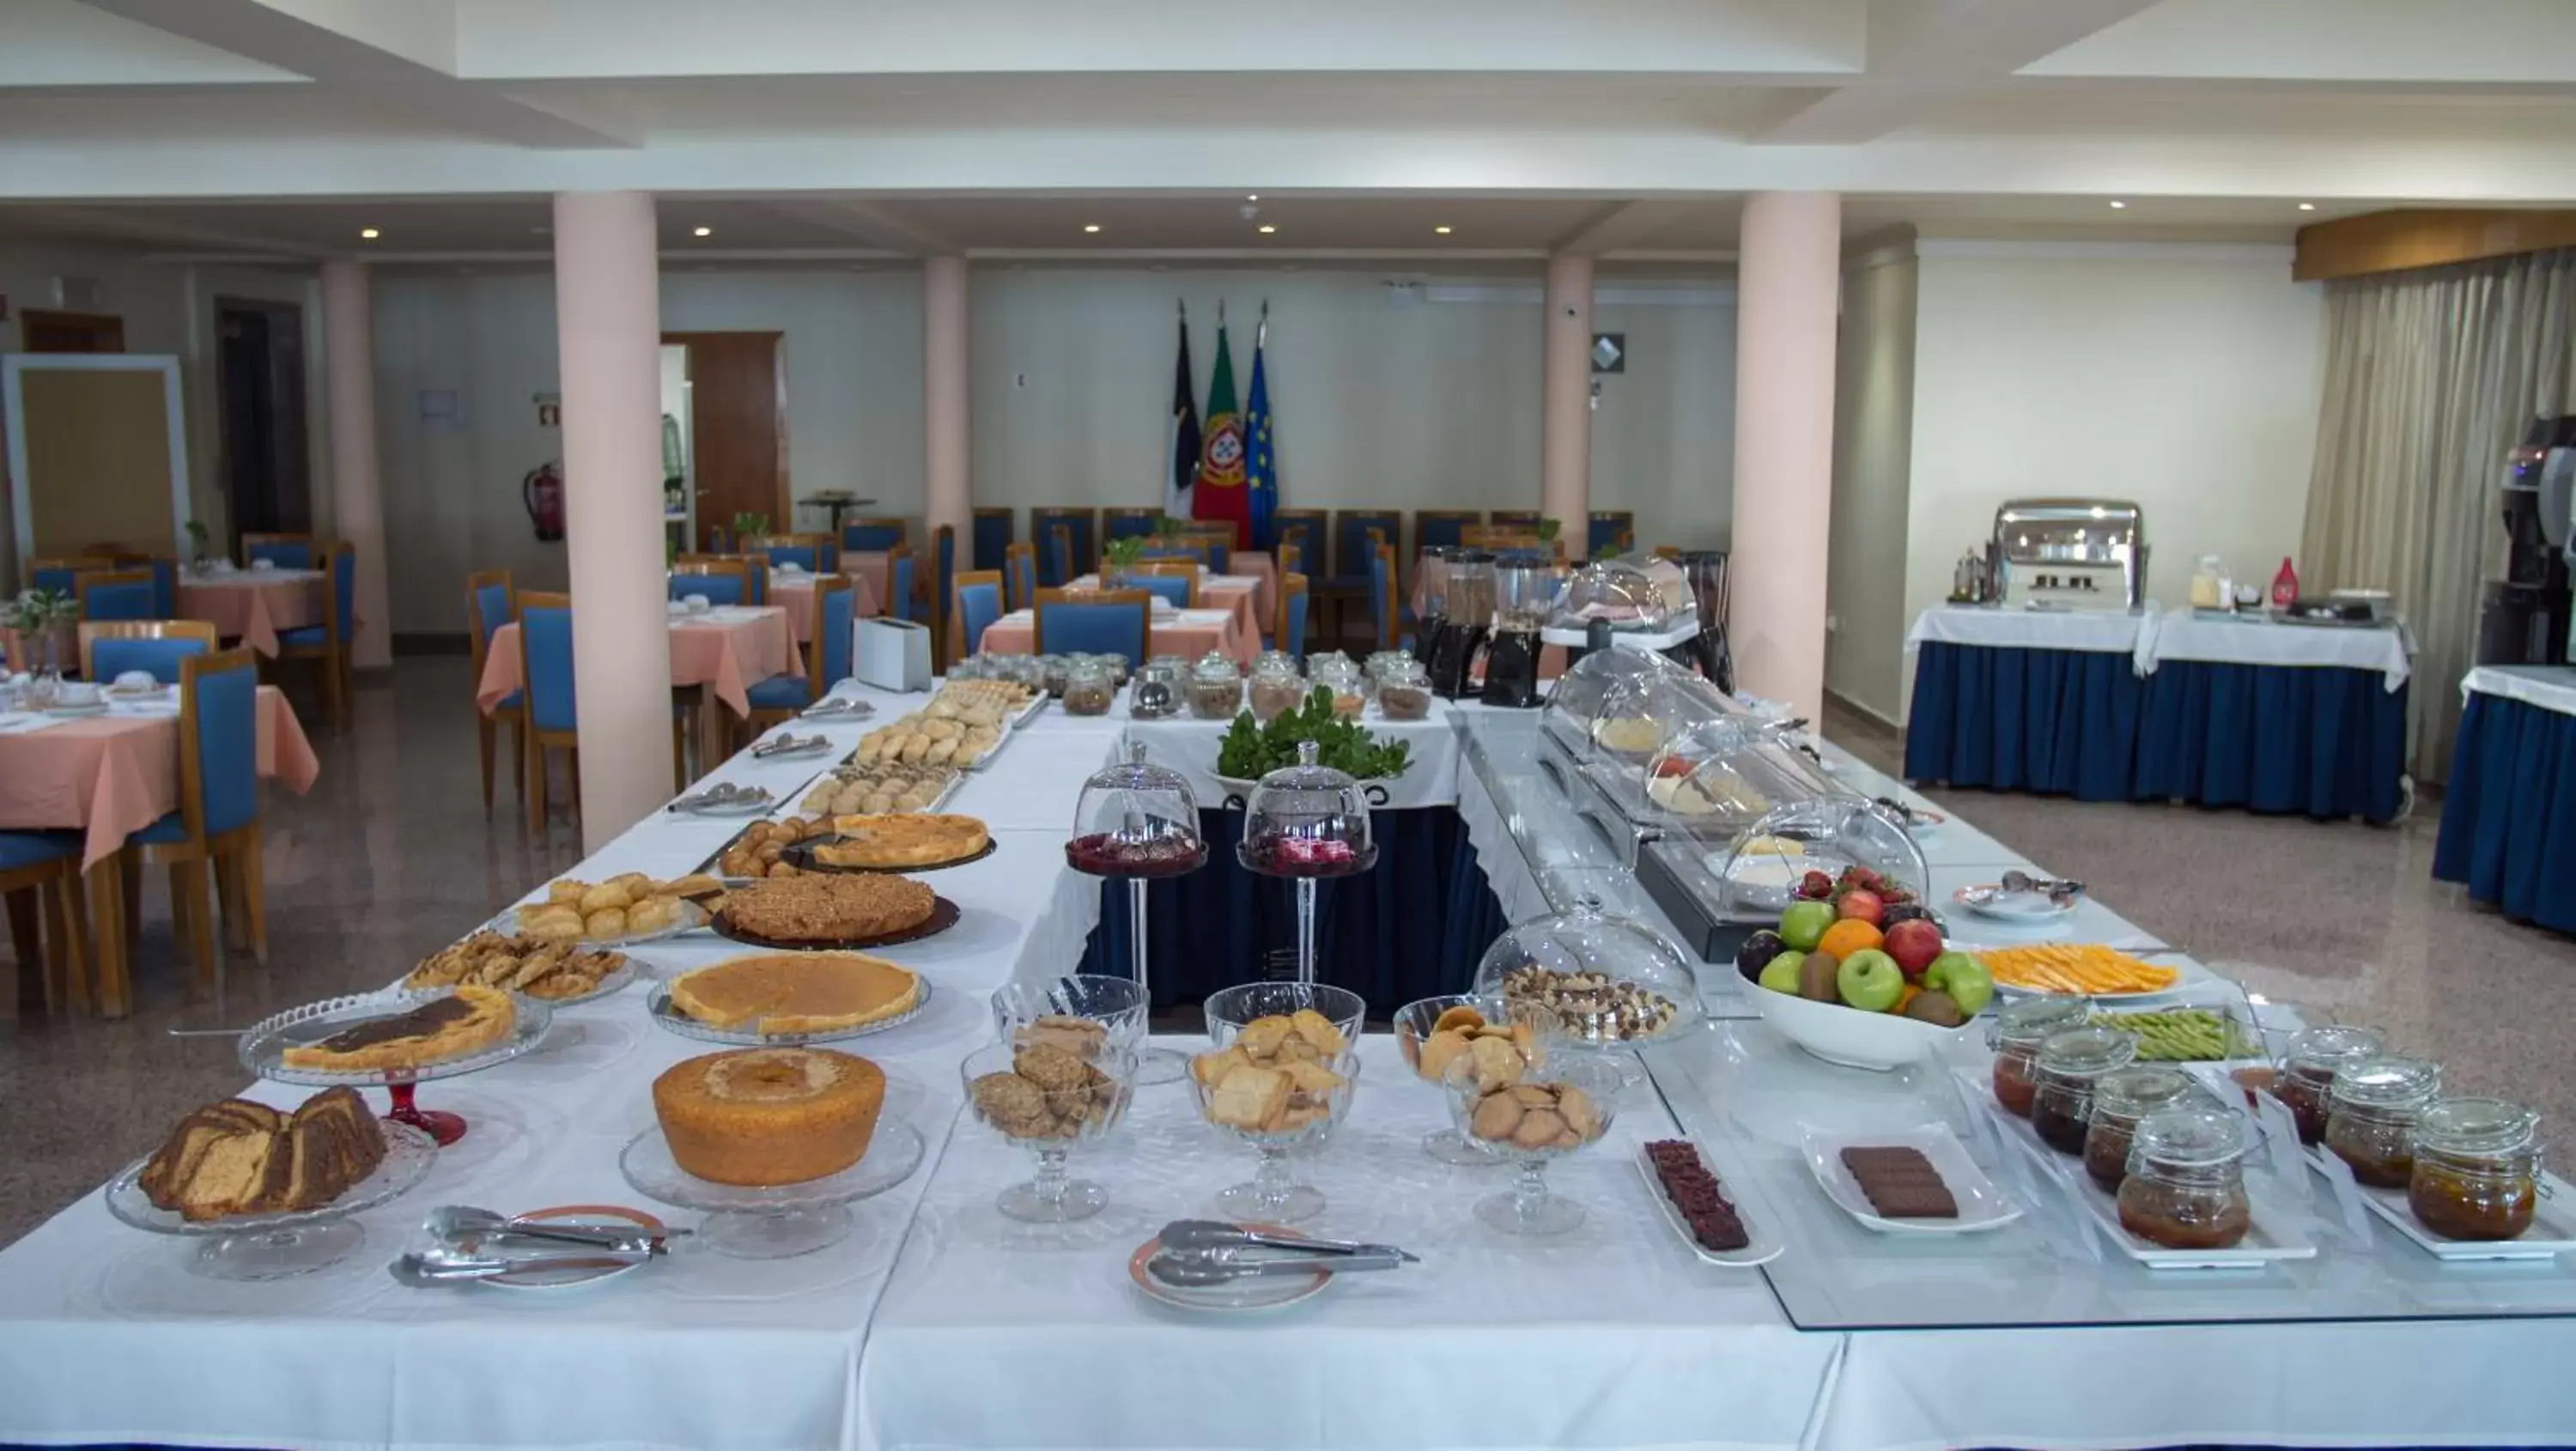 Buffet breakfast in Hotel Sao Jorge Garden